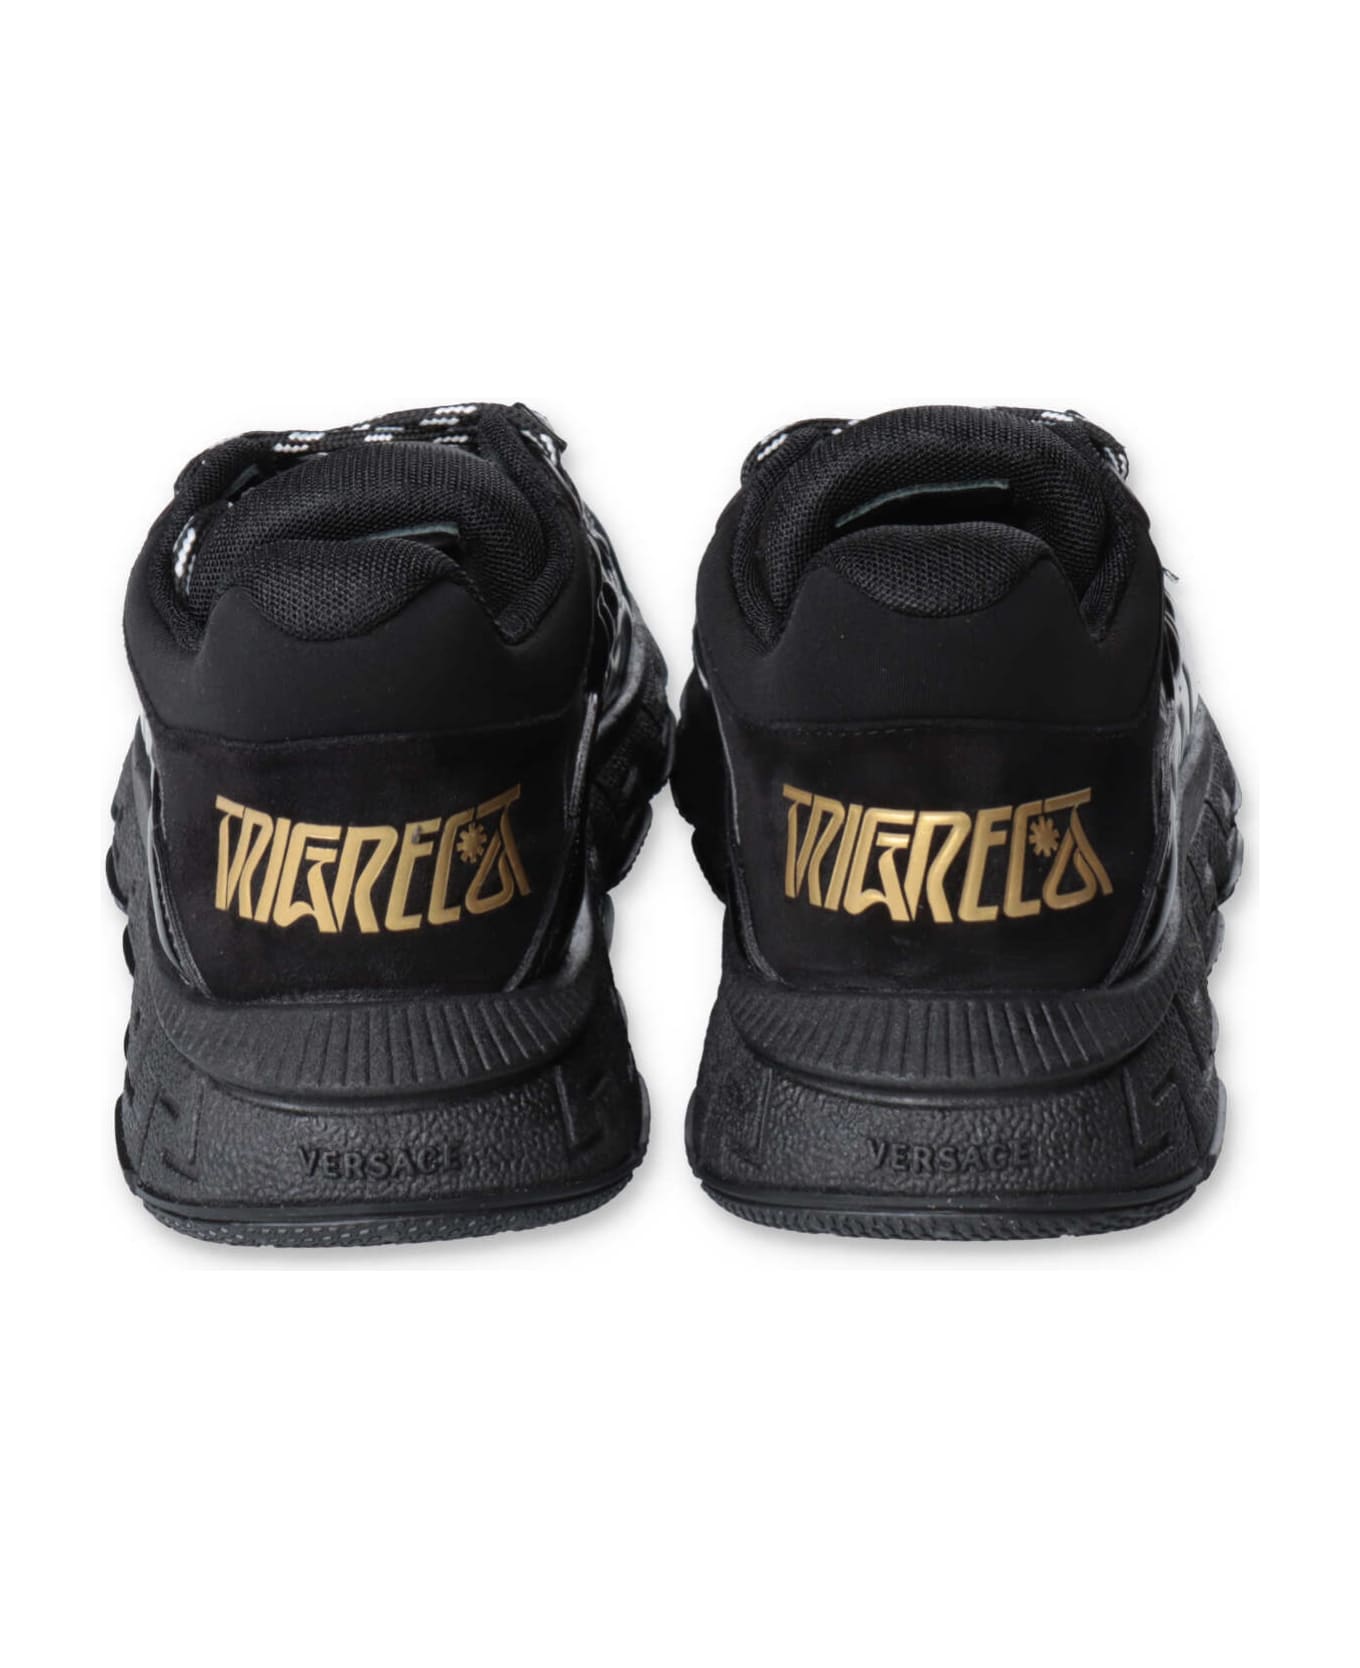 Versace Sneakers Nera In Pelle Di Vitello Bambino - Nero